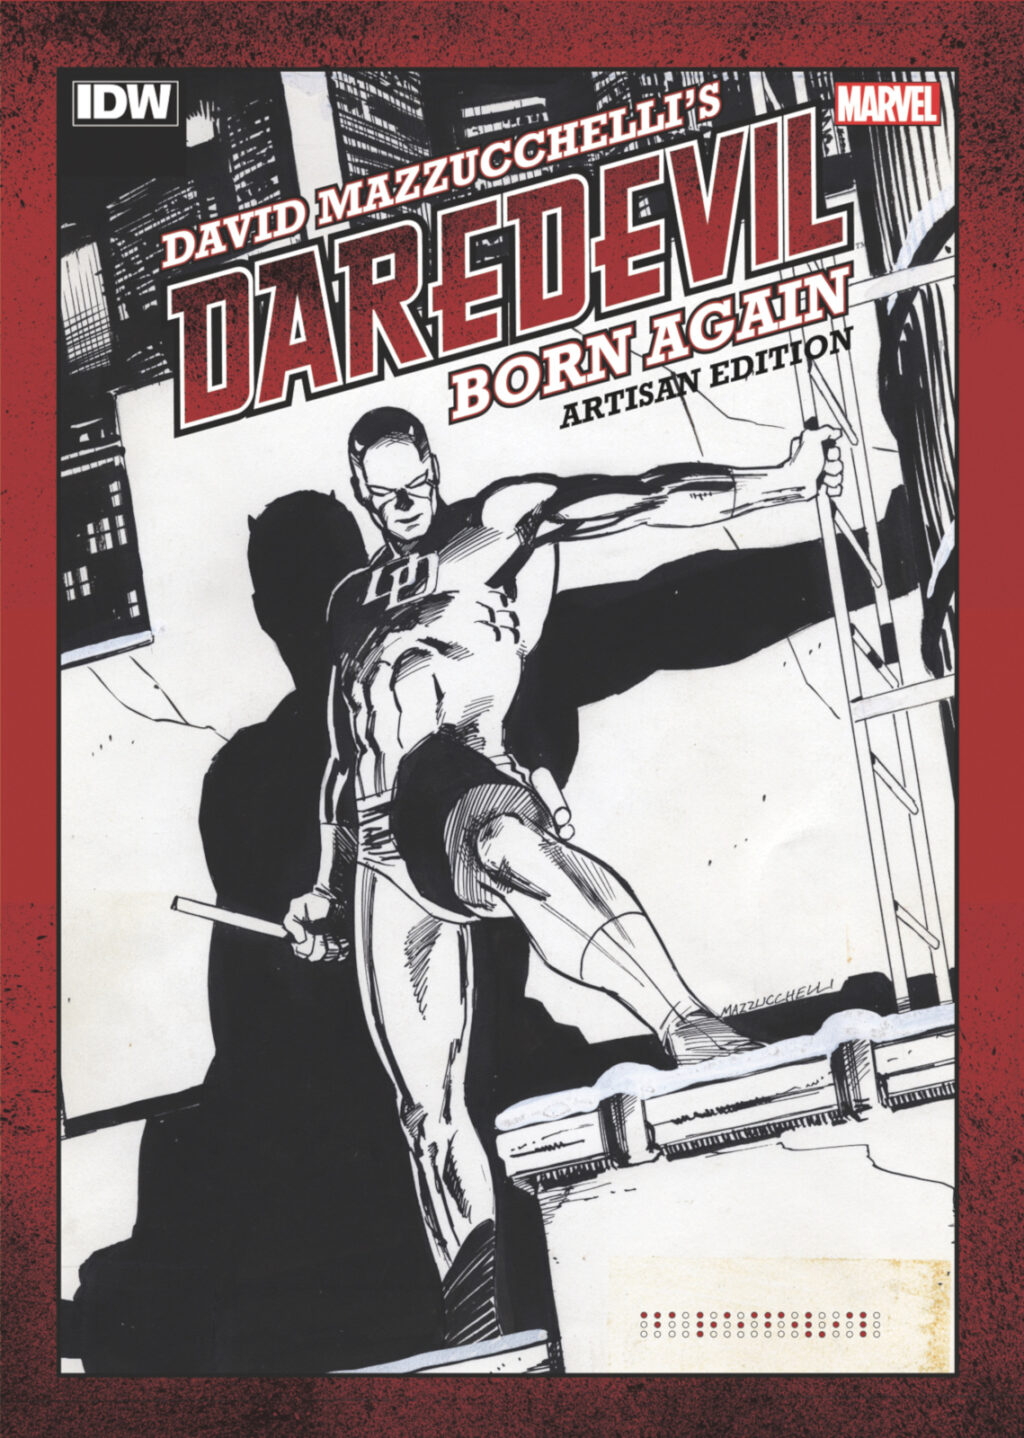 David Mazzucchelli's Daredevil: Born Again Artisan Edition cover prelim